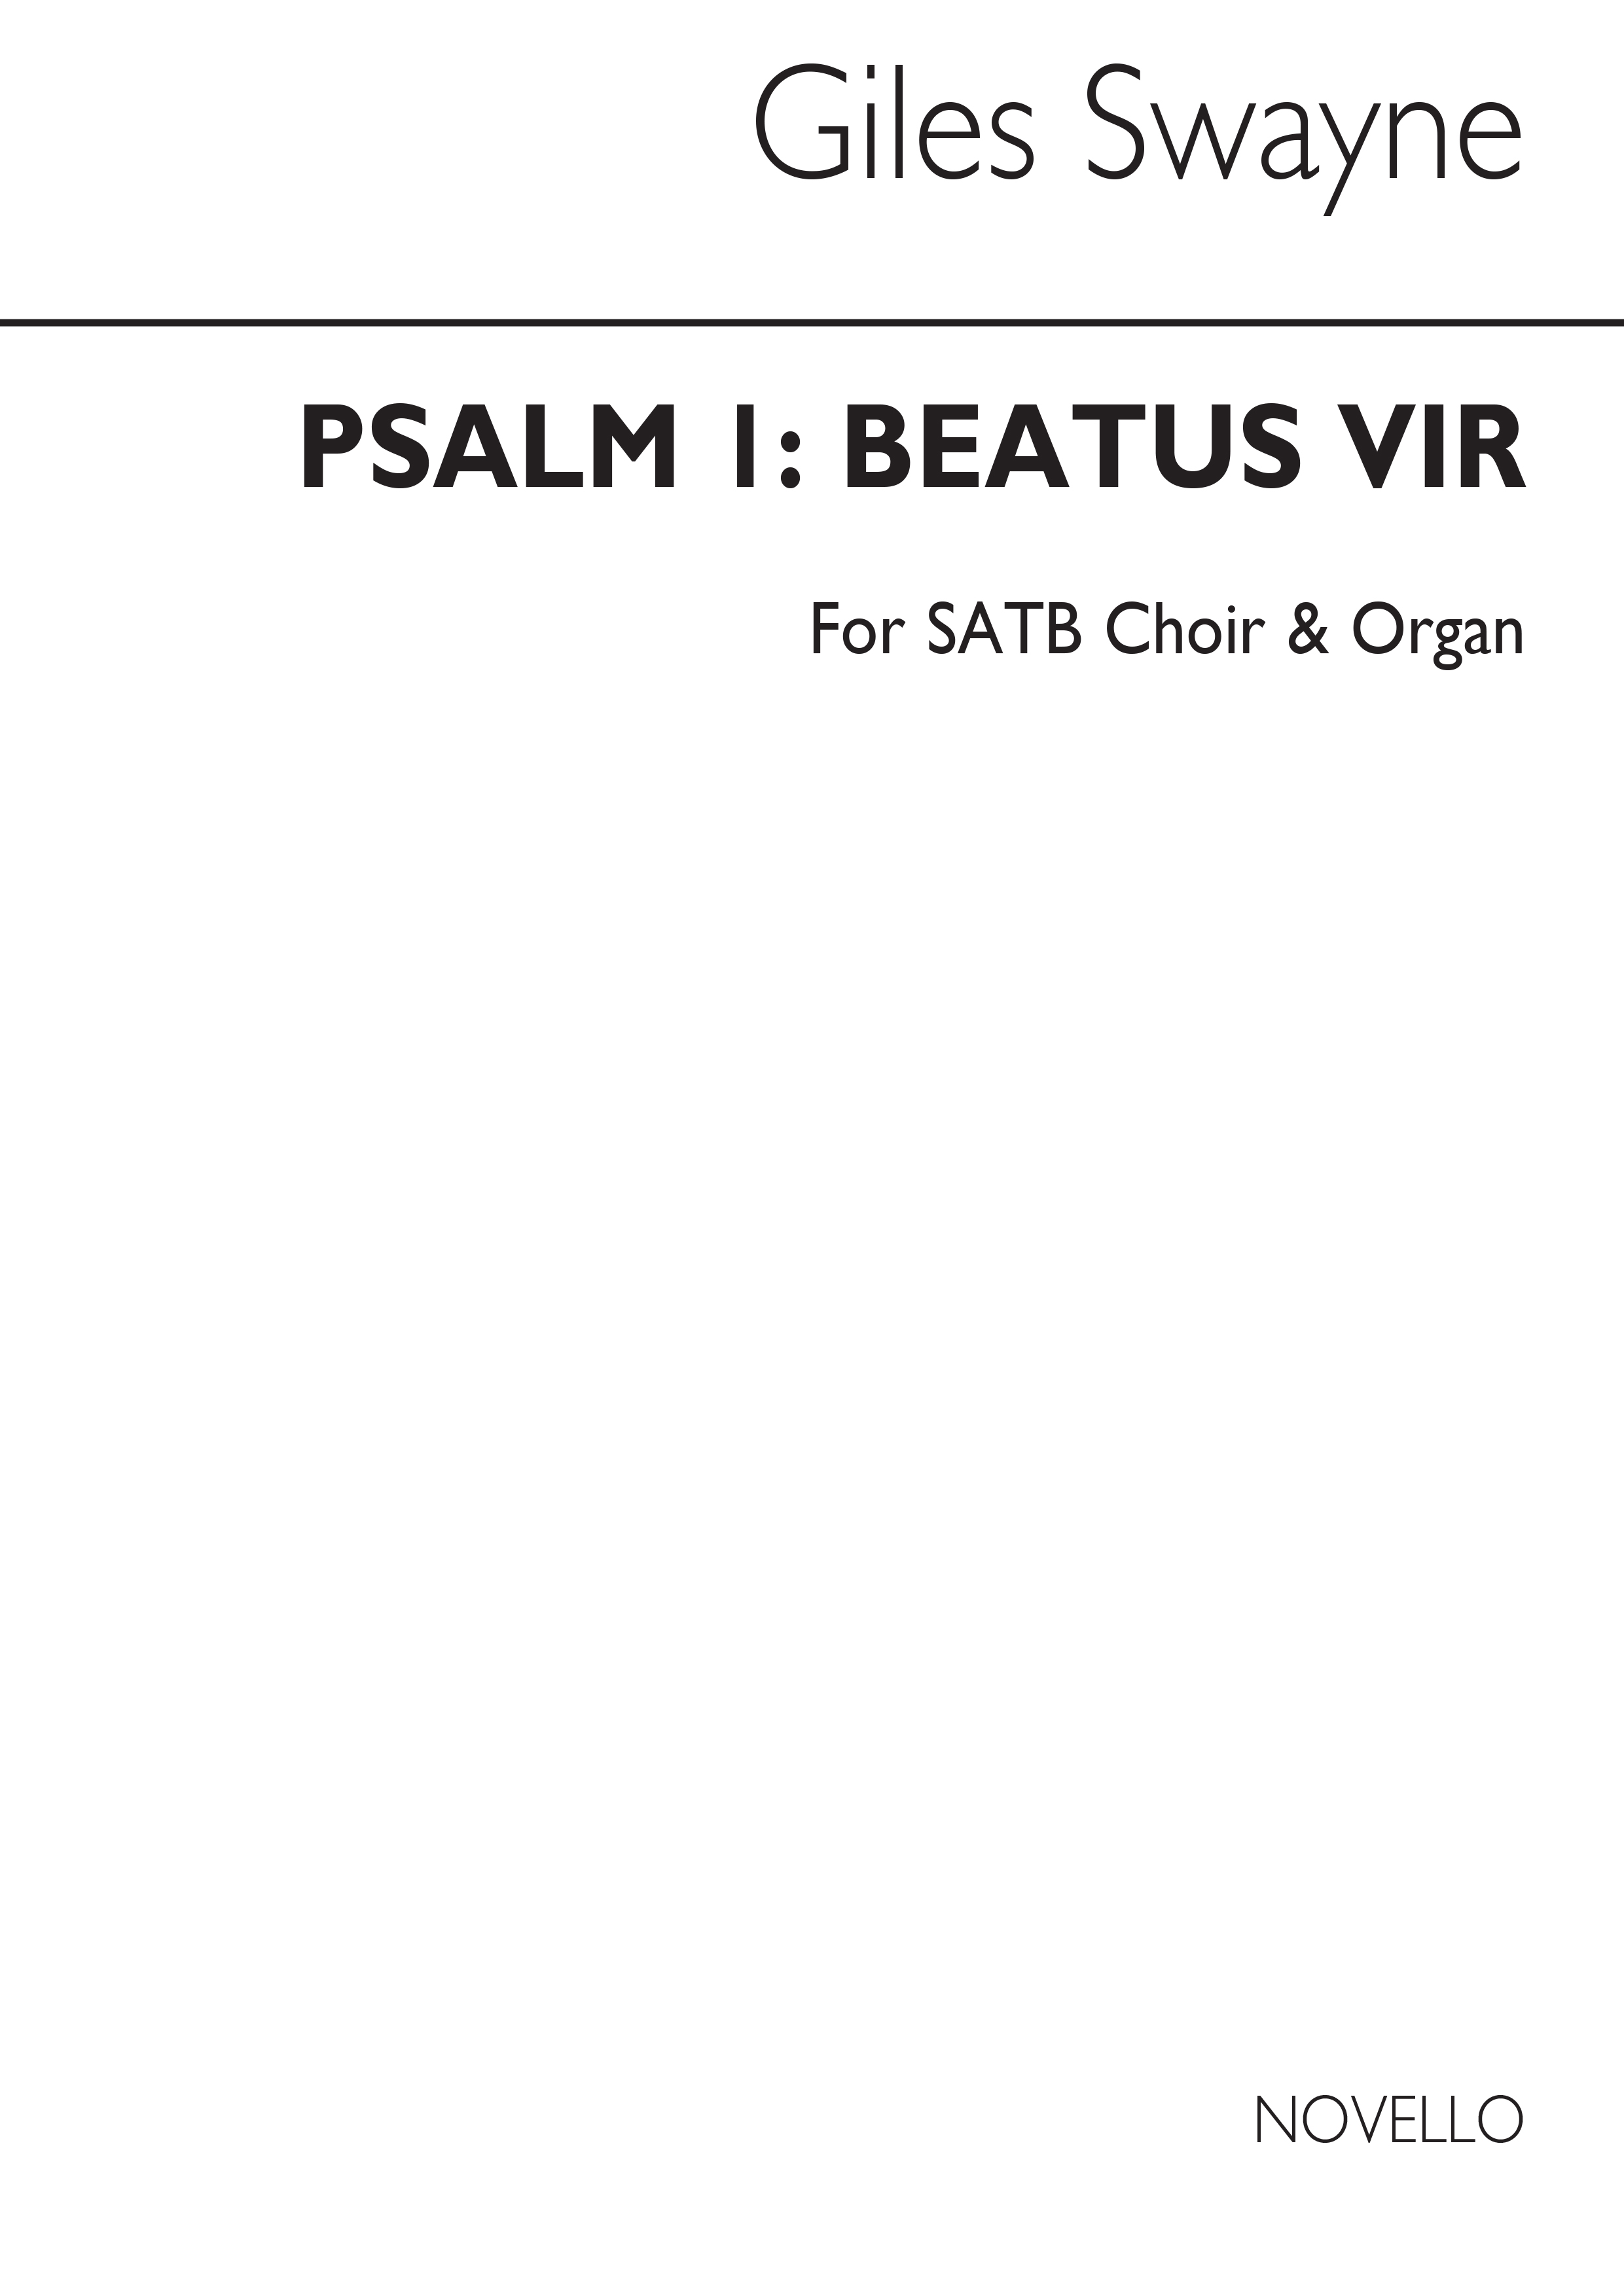 Giles Swayne: Psalm 1 Beatus Vir Choral Leaflet: SATB: Instrumental Work